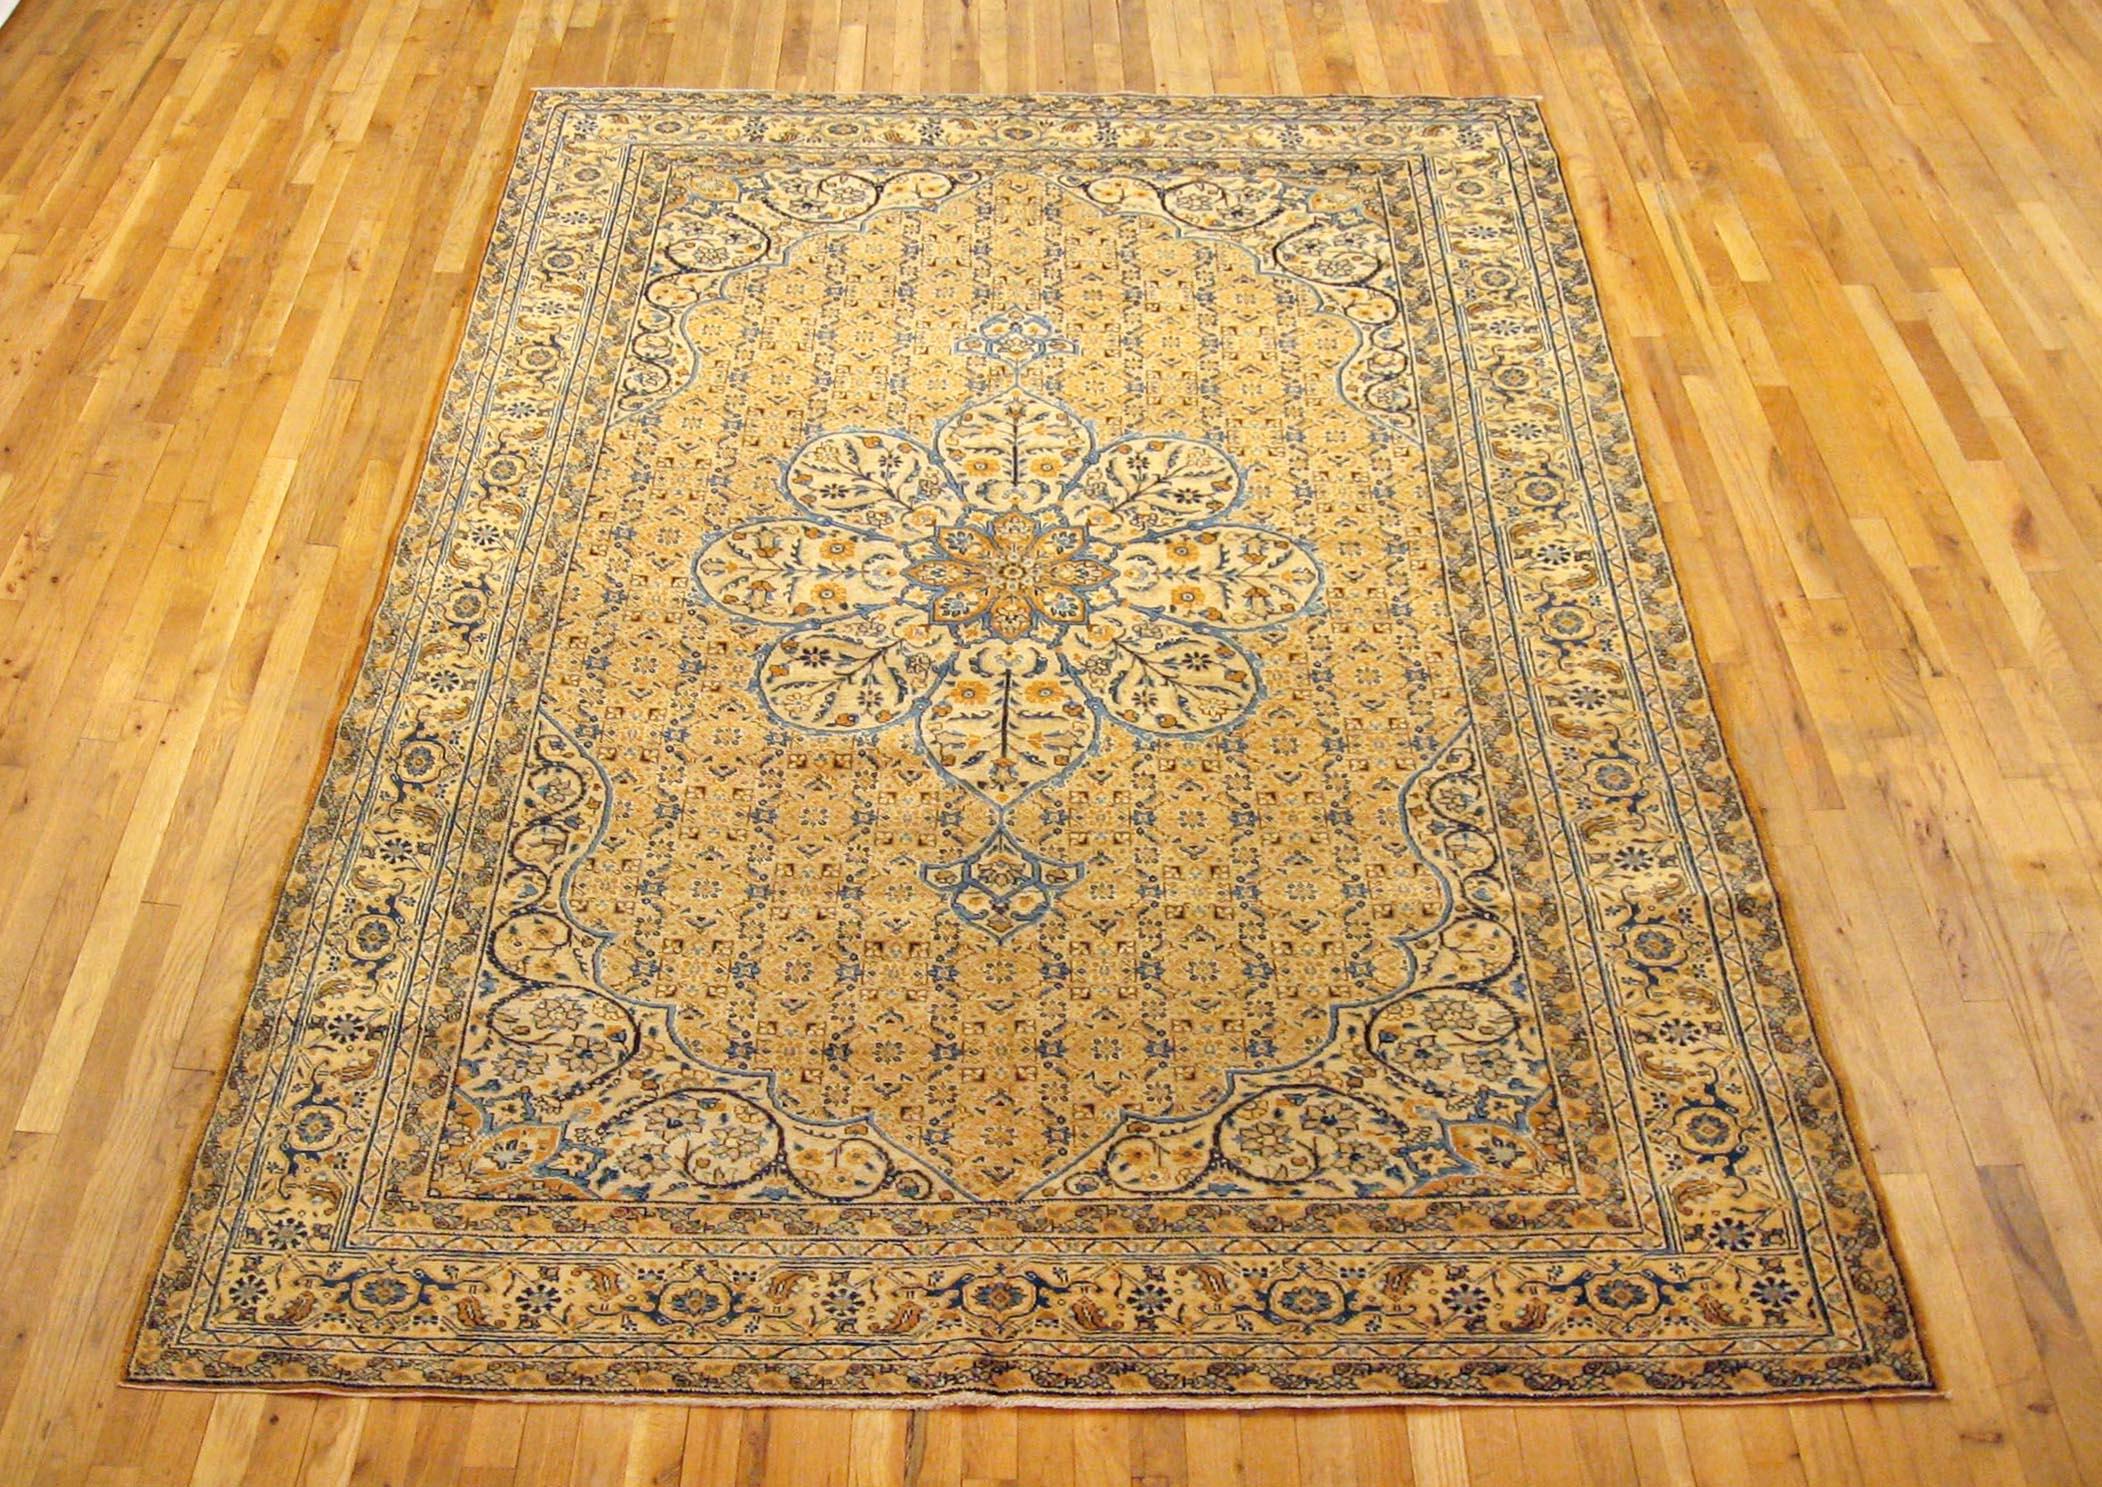 Antique Persian Tabriz Oriental carpet, circa 1910, room sized.

An antique Persian Tabriz oriental carpet, circa 1910. Size: 9'10